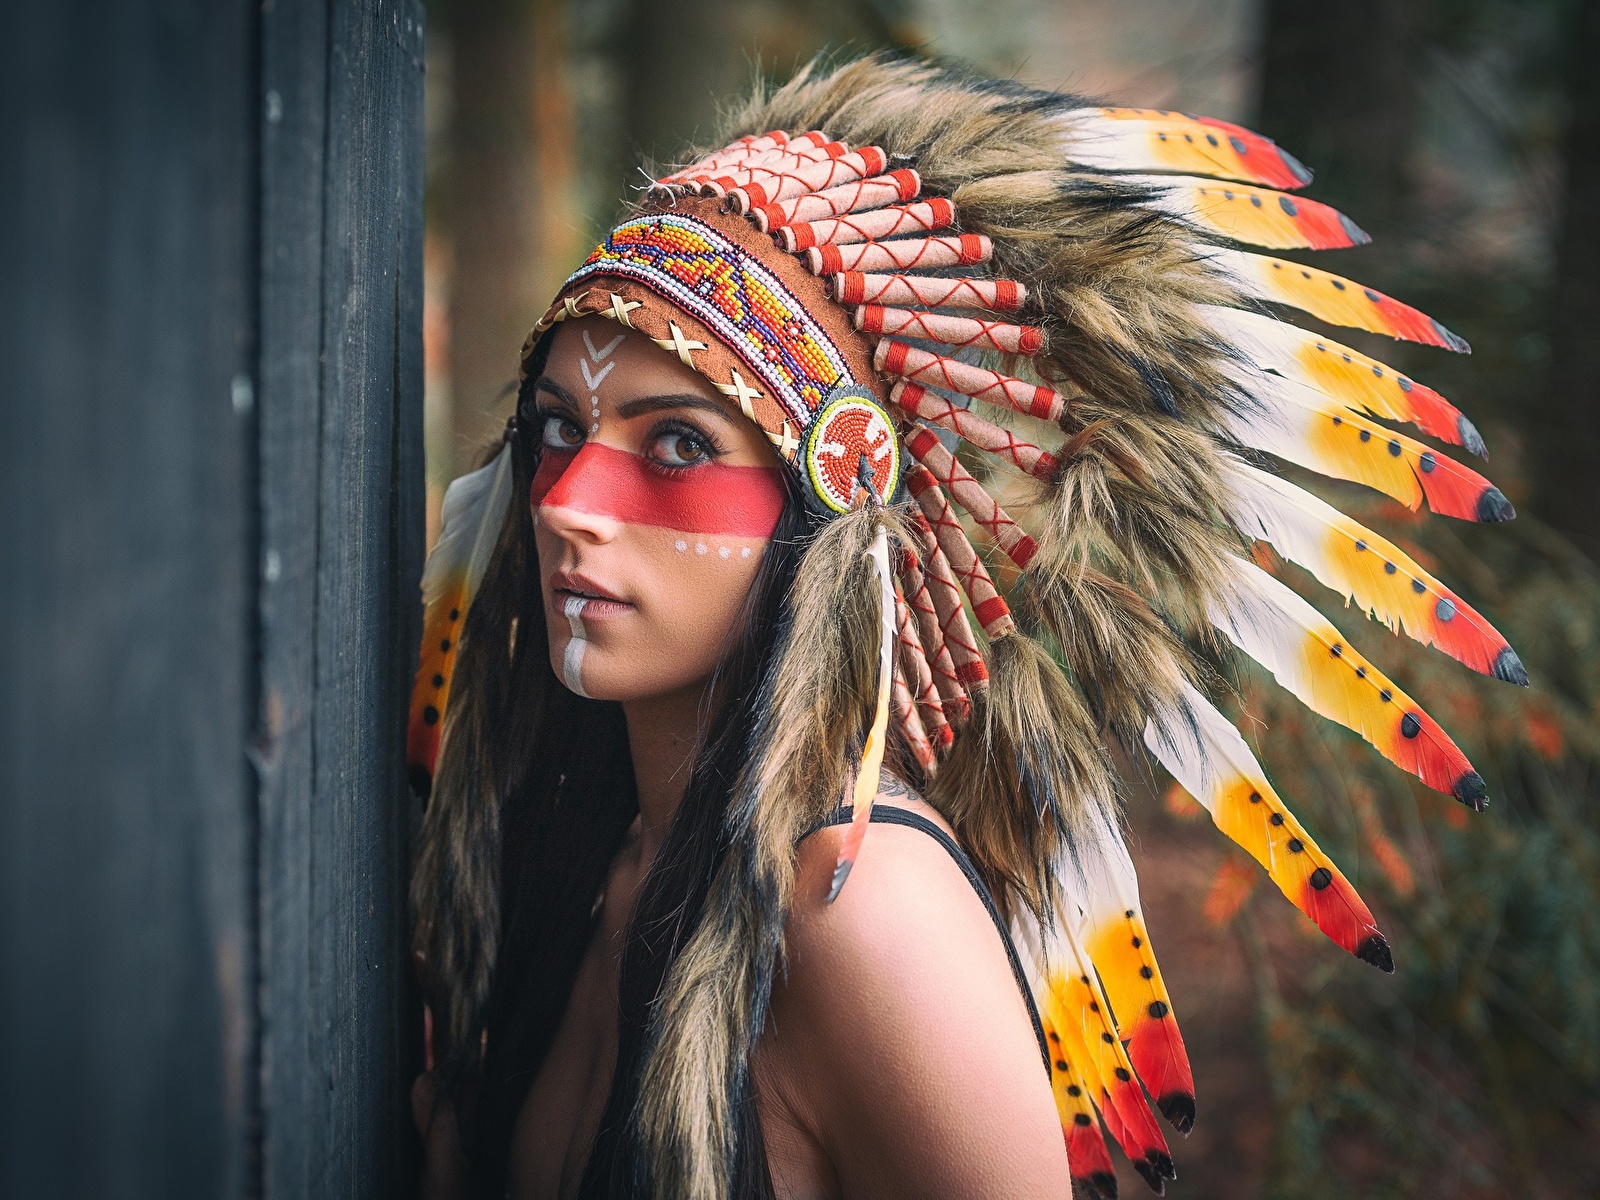 7 атмосферных фото женщин американских индейцев. Кхм... Или всё таки мужчин? 😉